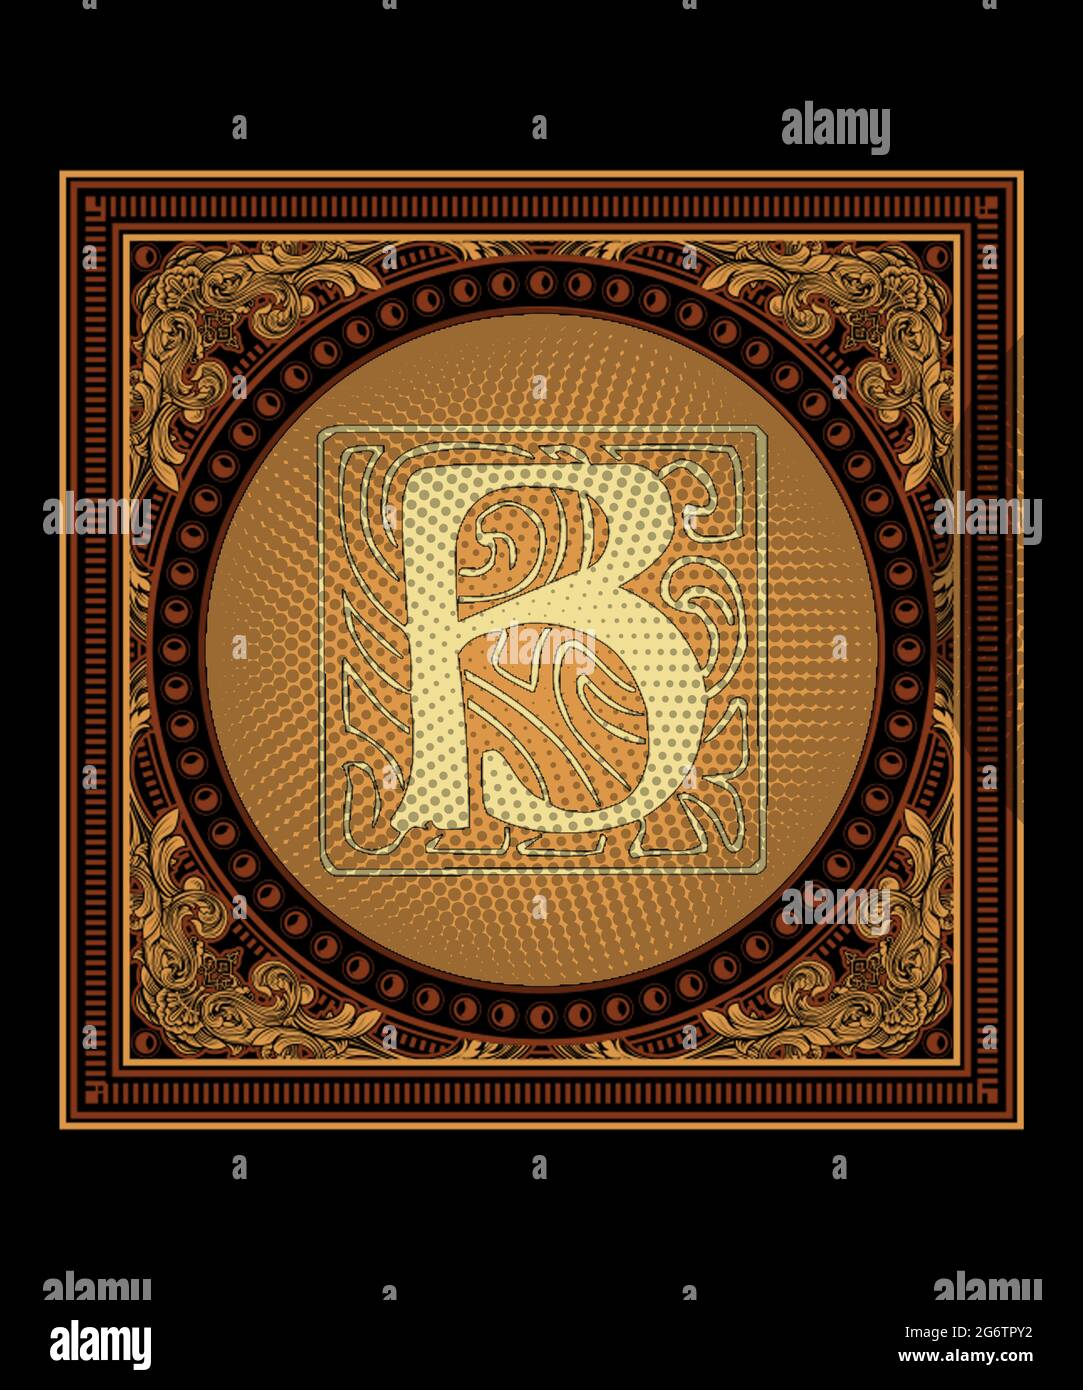 Lettre B monogramme initiale lettre gothique B dans une illustration de style Renaissance avec fond noir, jaune et brun carré intramted design avec do Banque D'Images